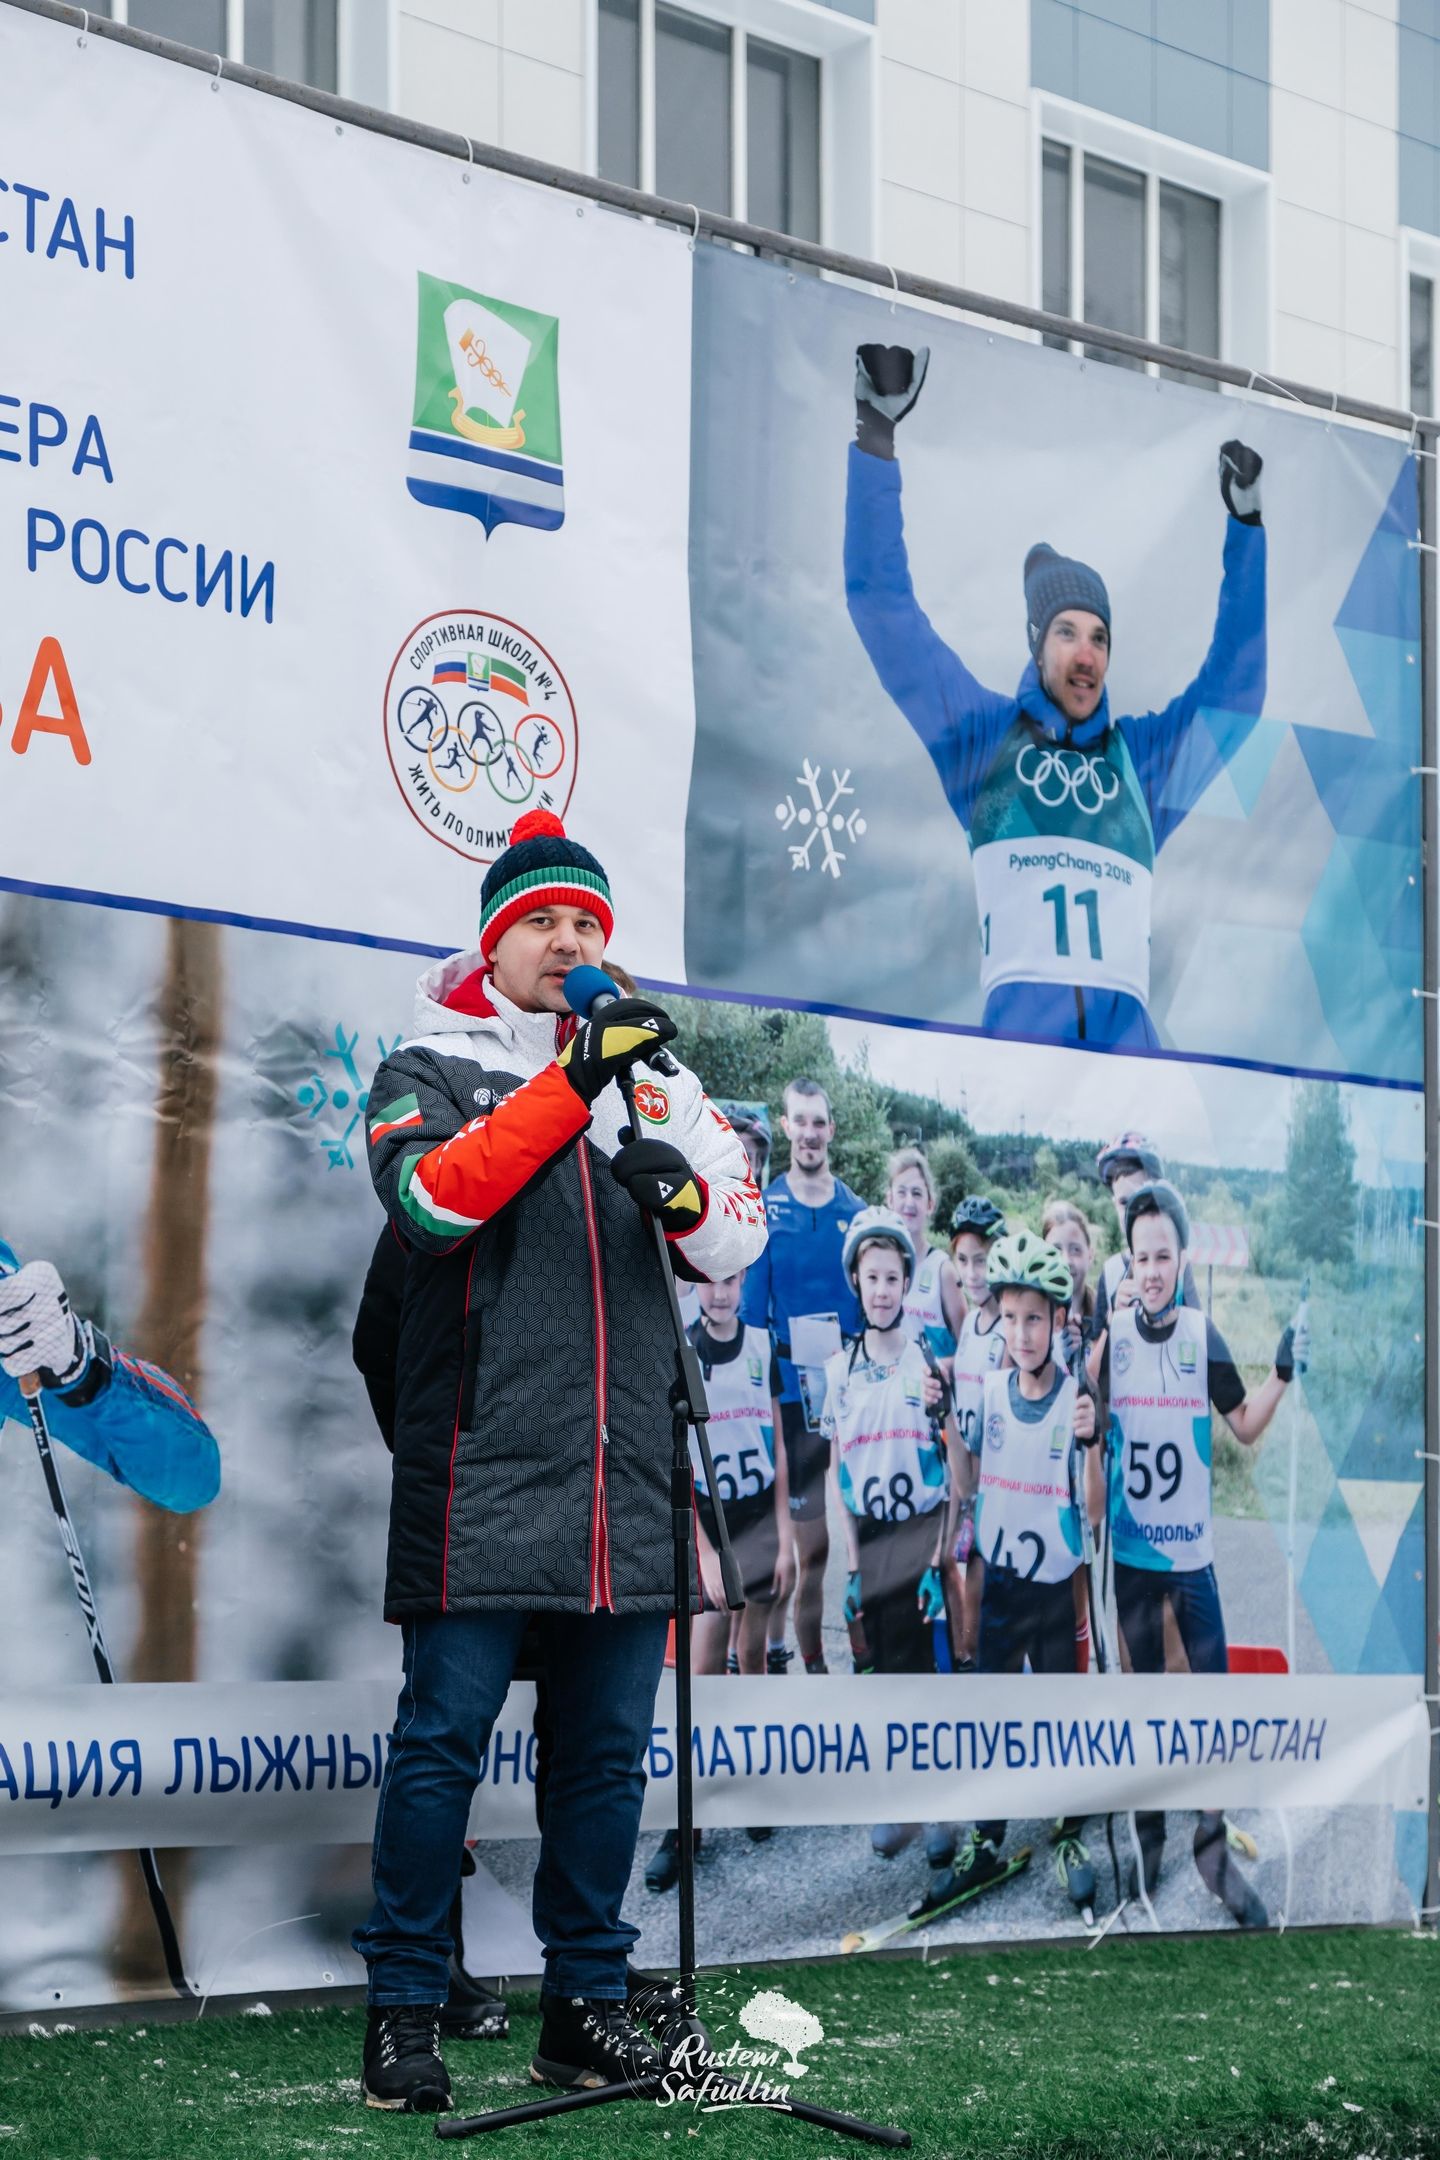 Фото: Первенство РТ на призы олимпийского призёра Андрея Ларькова